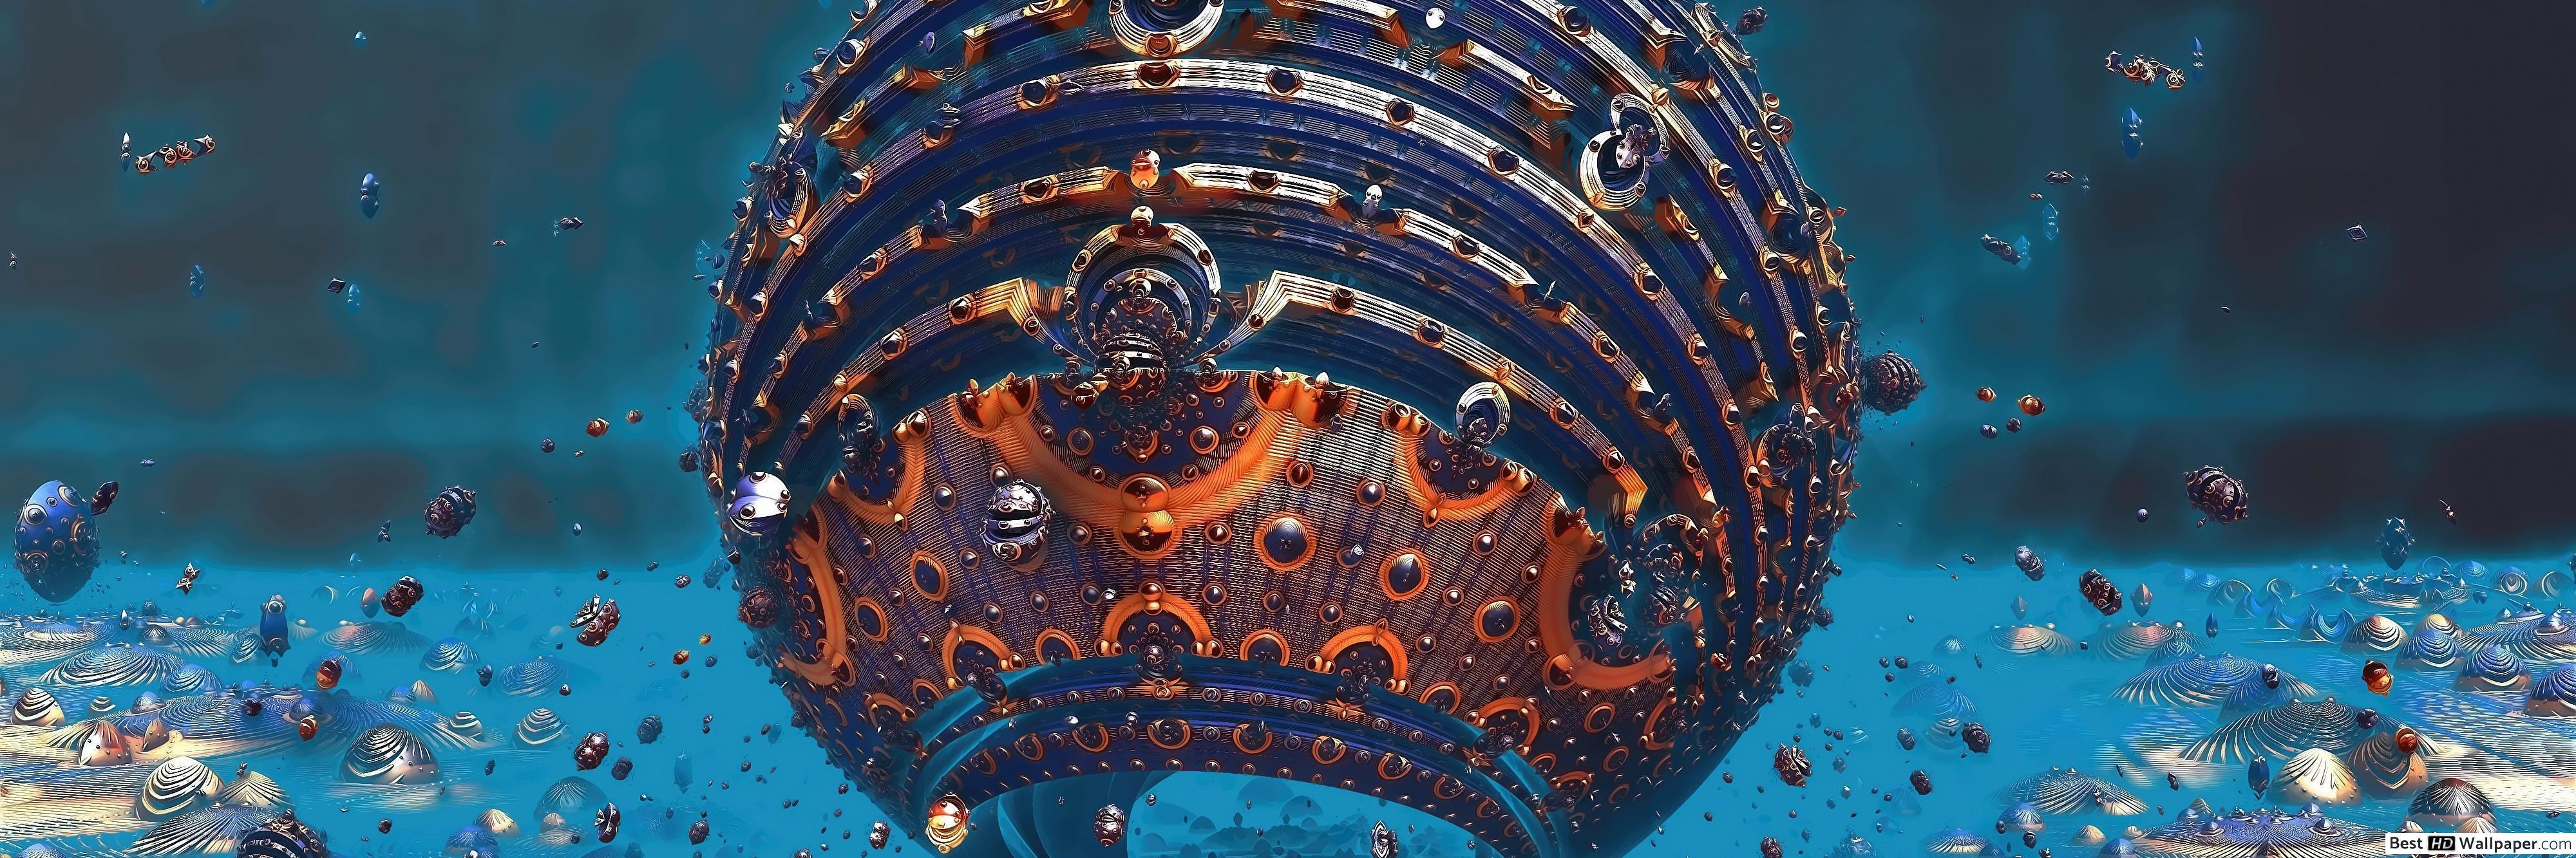 3D fractals sphere HD wallpaper download